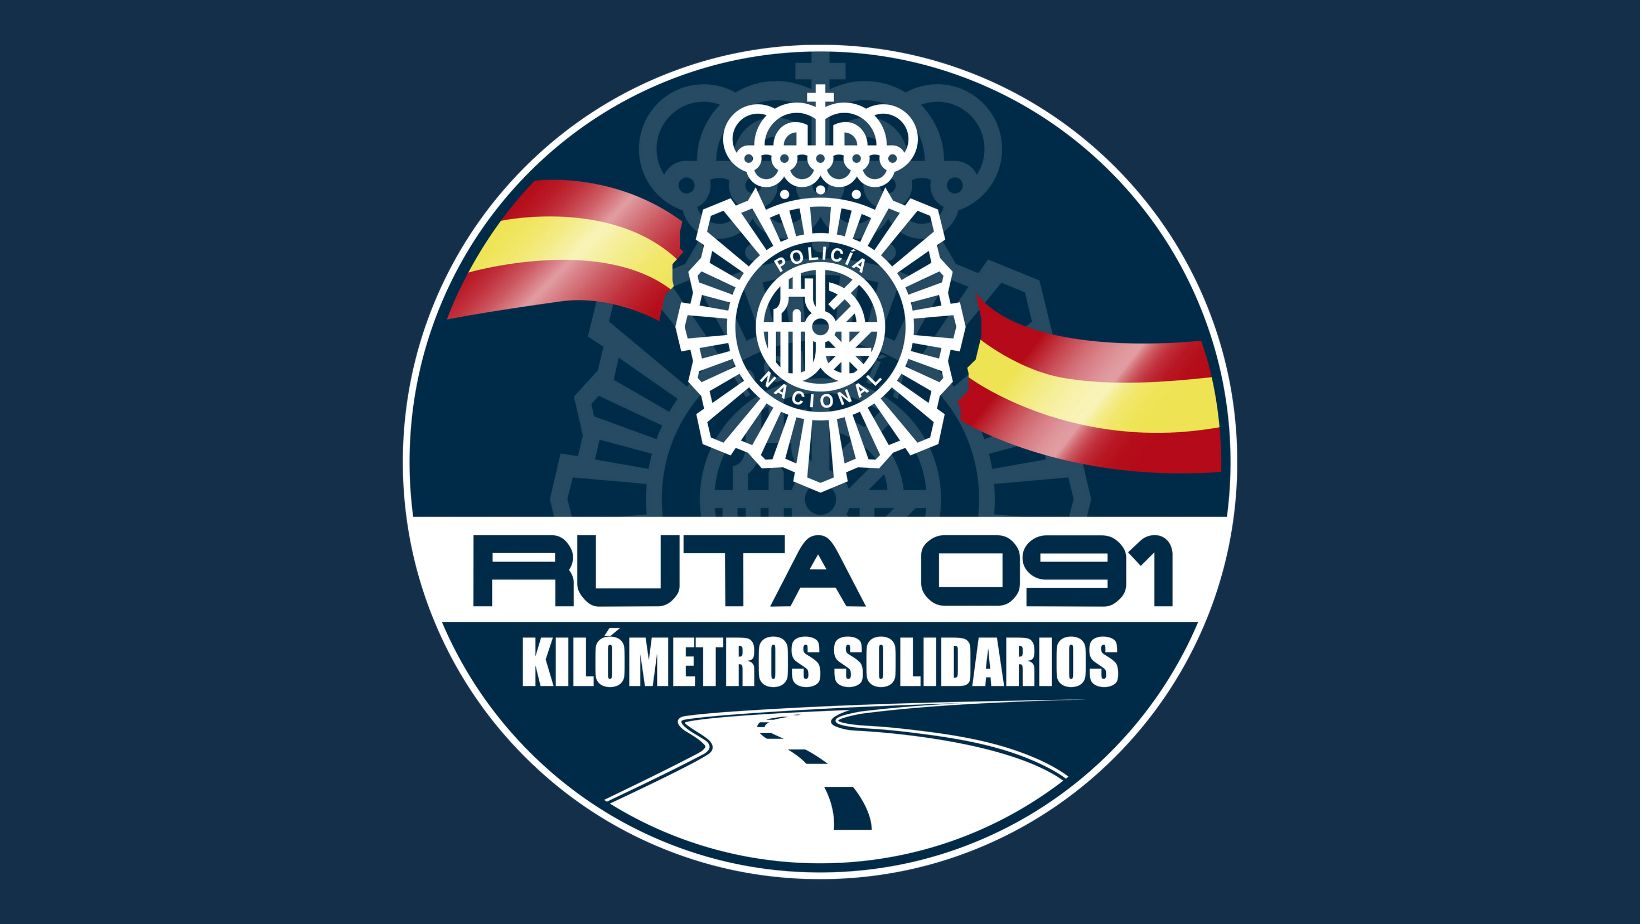 Carrera-solidaria-RUTA-091